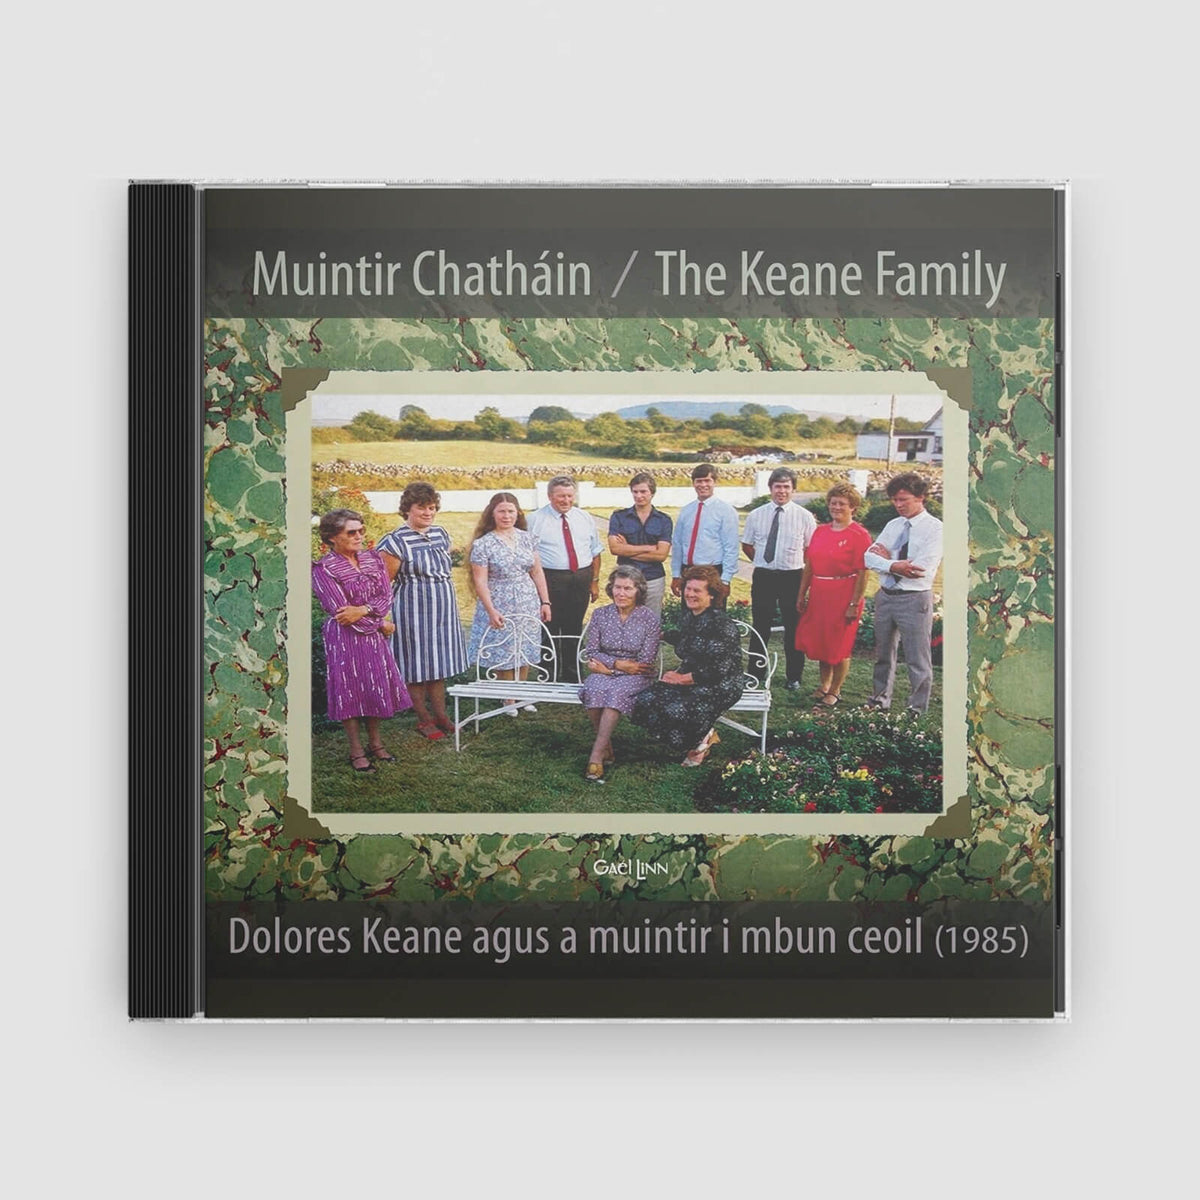 The Keane Family : Muintir Chatháin